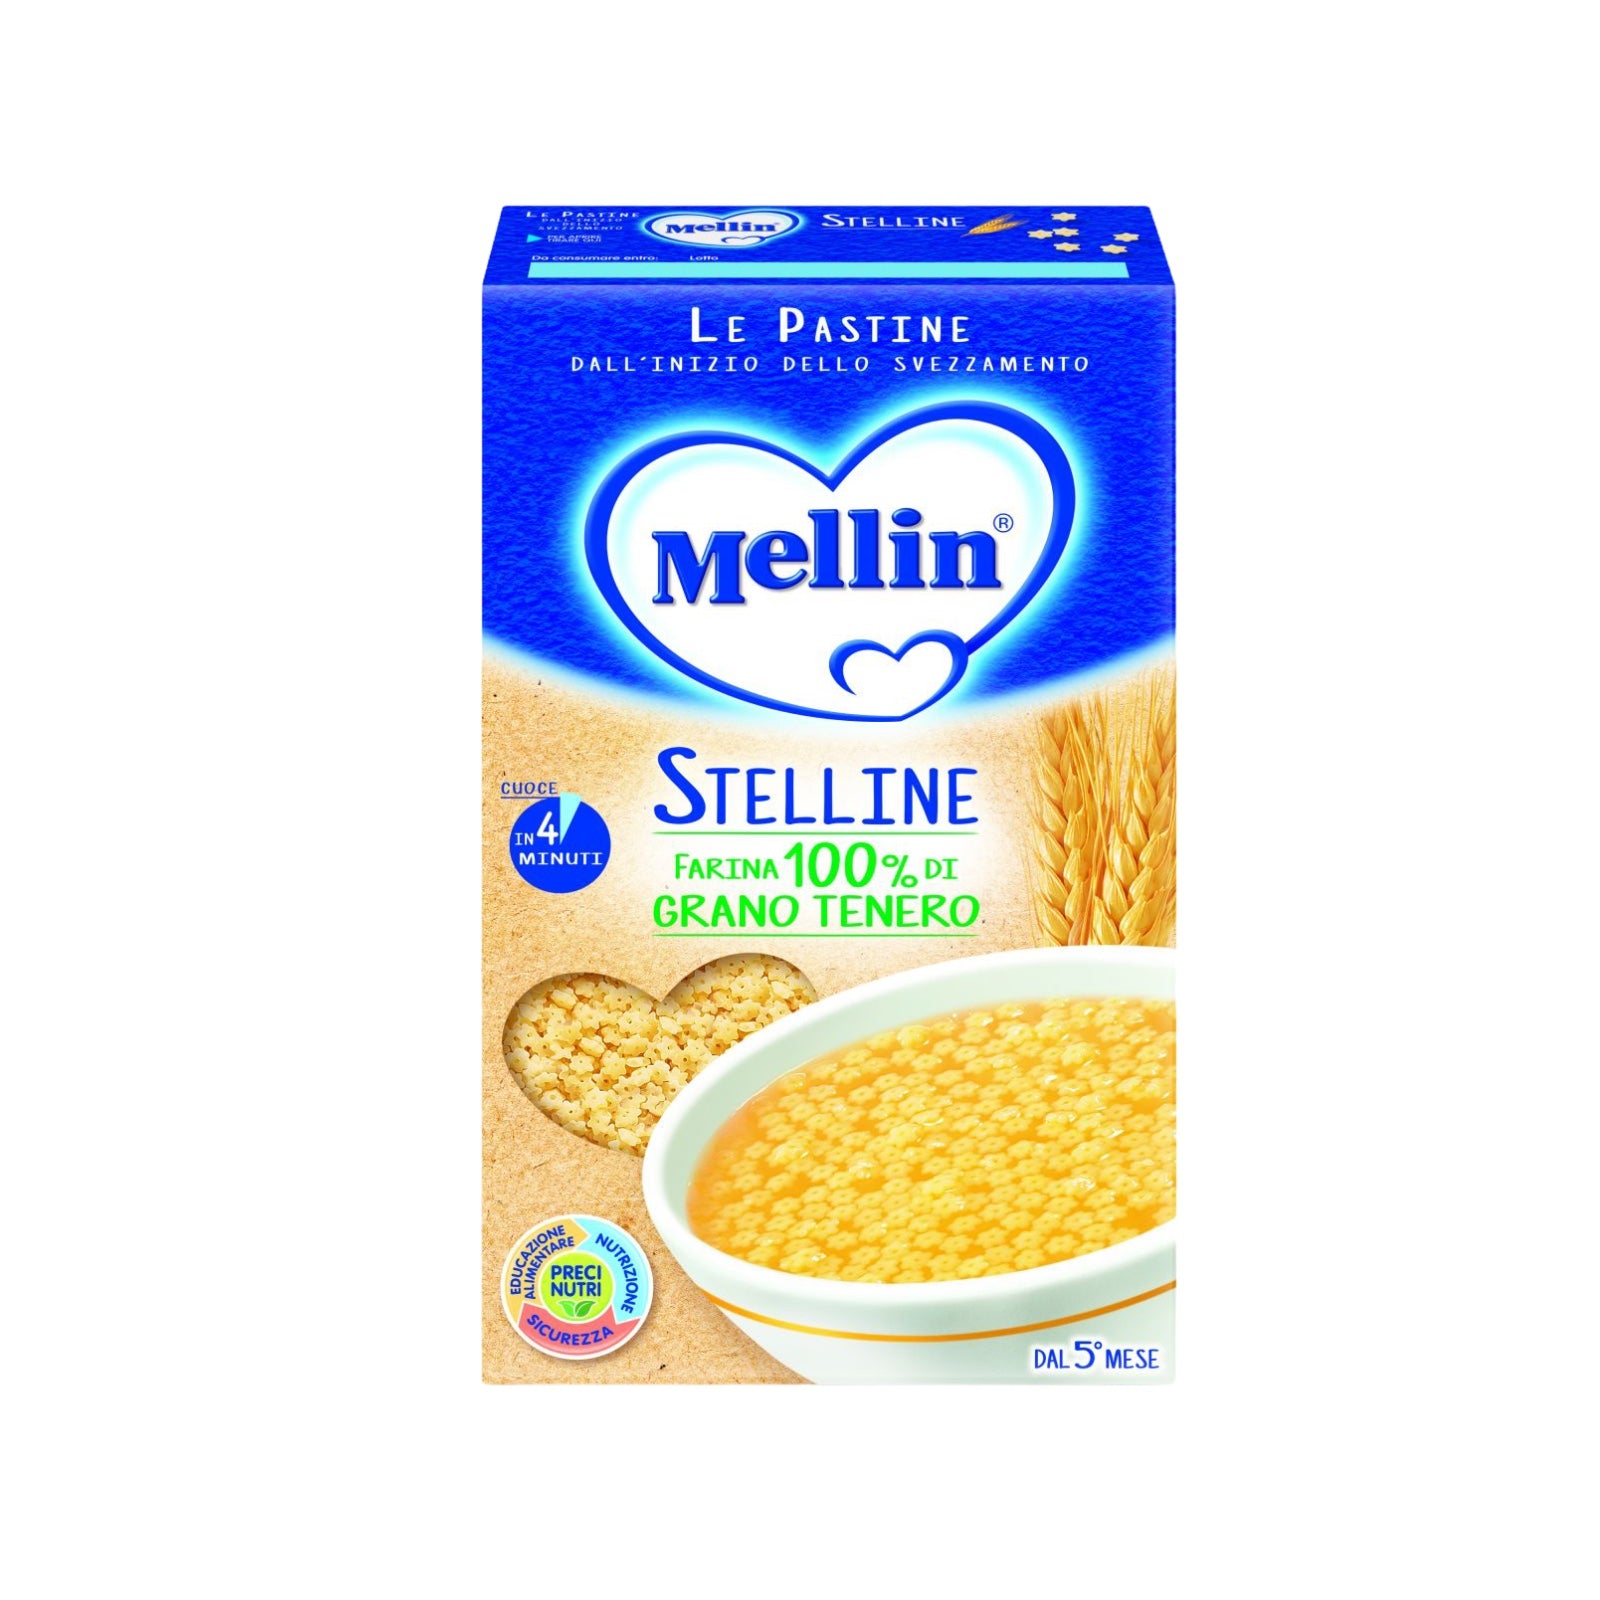 Mellin Pastina Semini 500G: acquista online in offerta Mellin